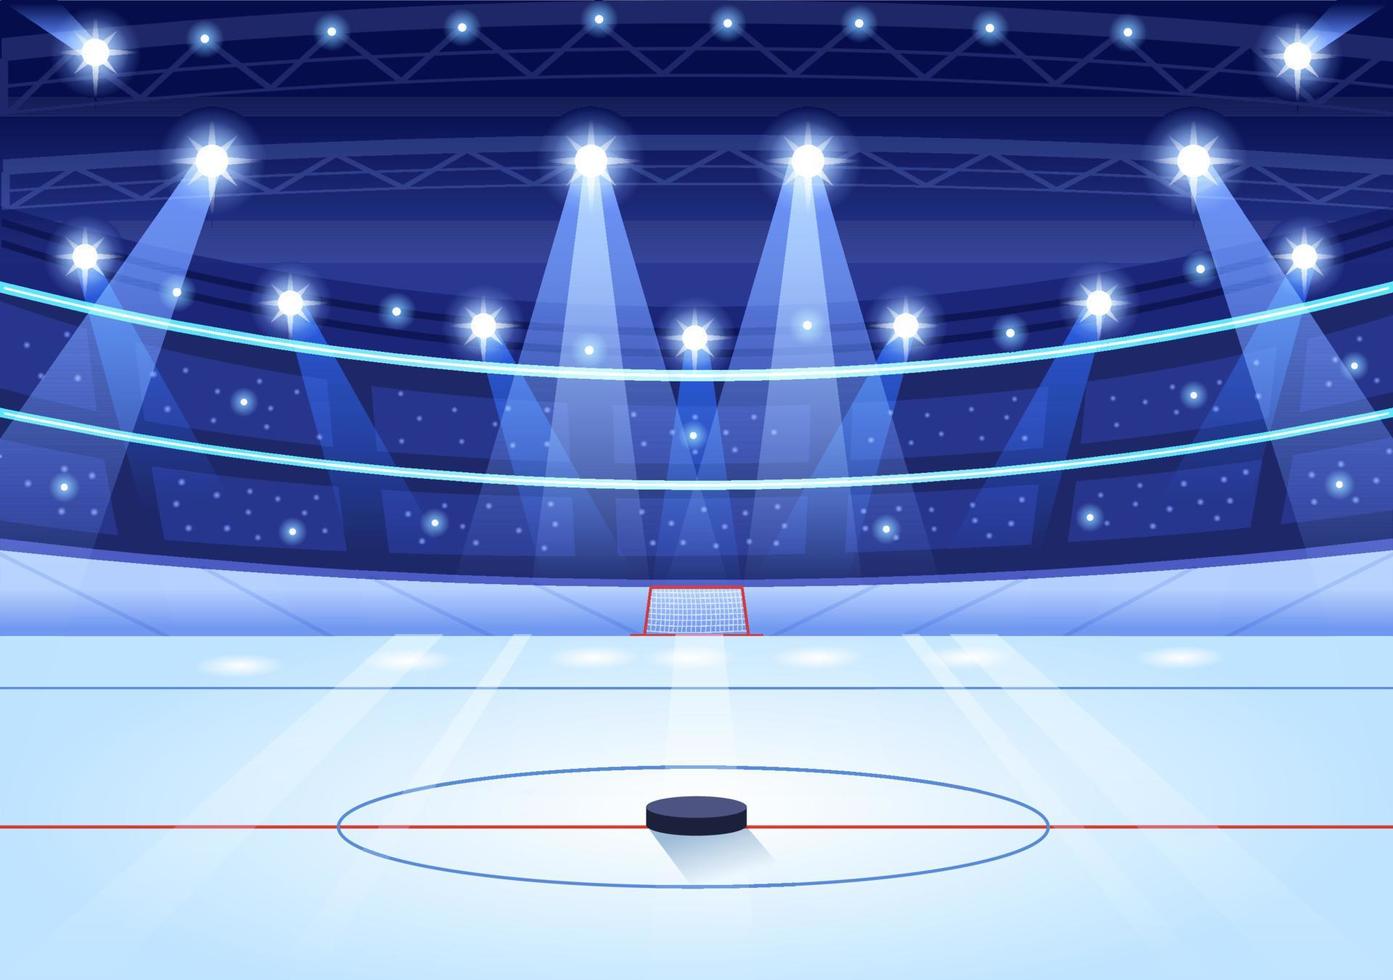 is hockey spelare sport med hjälm, pinne, puck och skridskor i is yta för spel eller mästerskap i platt tecknad serie hand dragen mallar illustration vektor